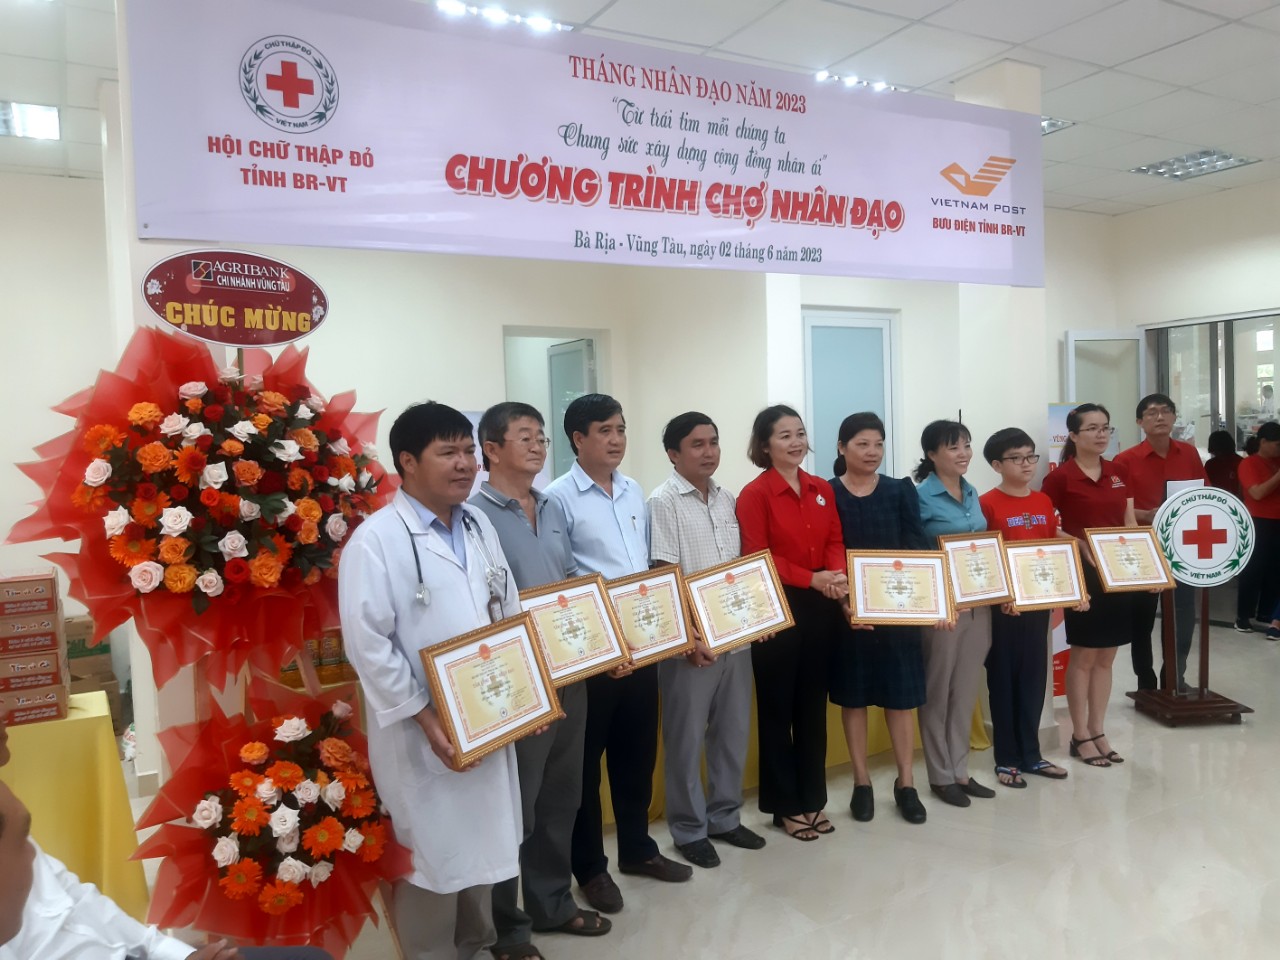 Hội Chữ thập đỏ tỉnh Bà Rịa - Vũng Tàu tổ chức “Chợ Nhân đạo” tại Bưu điện tỉnh Bà Rịa - Vũng Tàu - Ảnh 2.